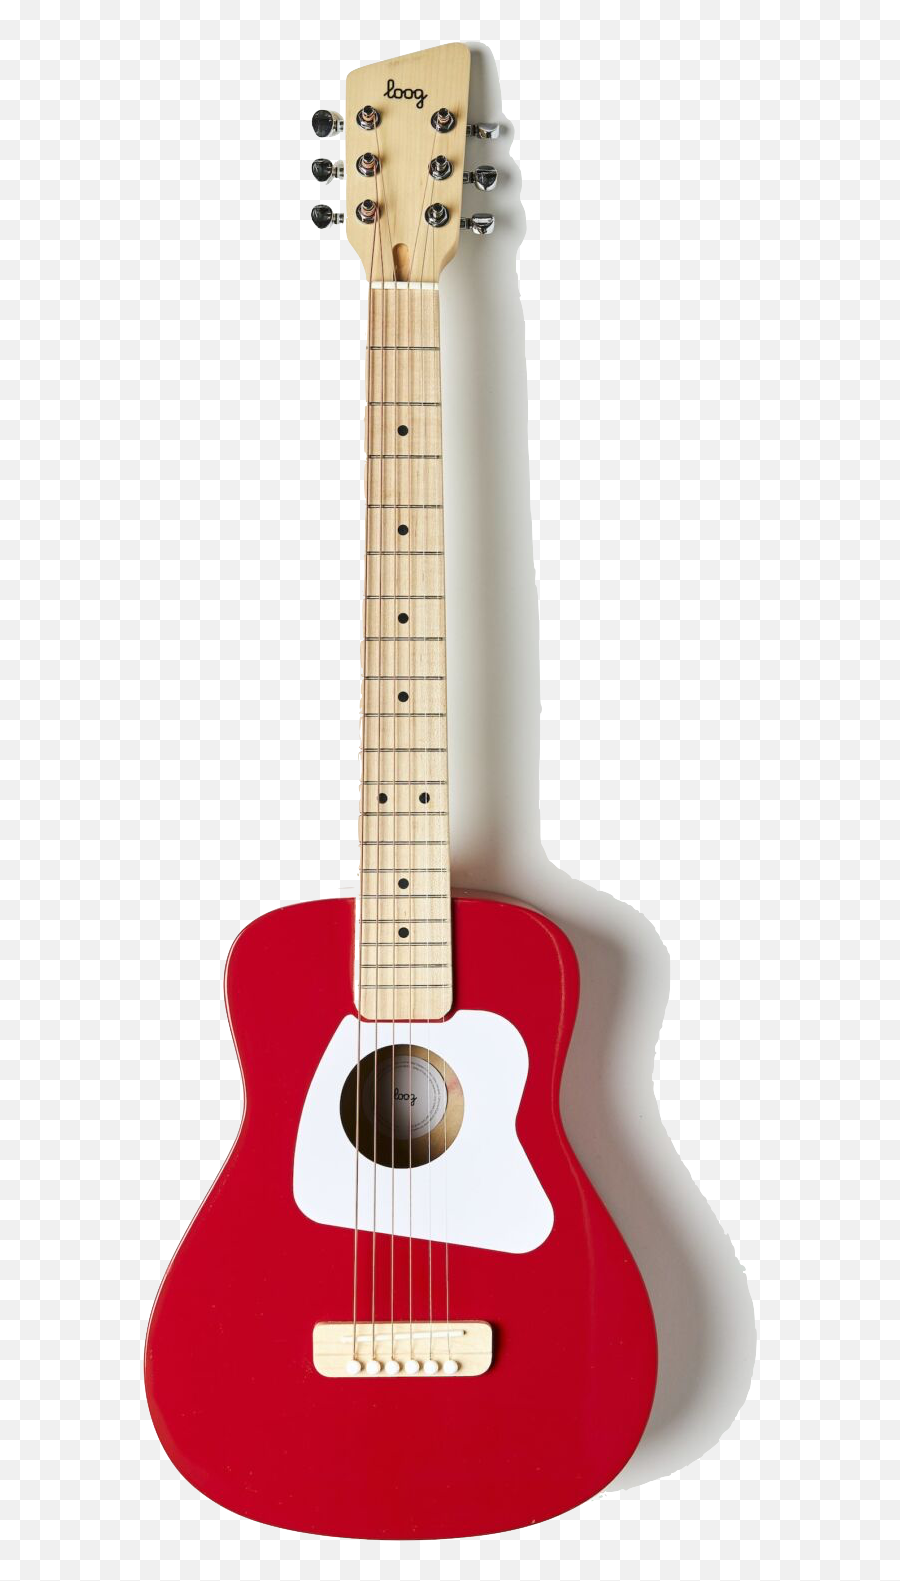 Loog Loog Pro Vi Acoustic Guitar Red - Loog Guitar Acoustic Emoji,Sweet Emotion On Guitar